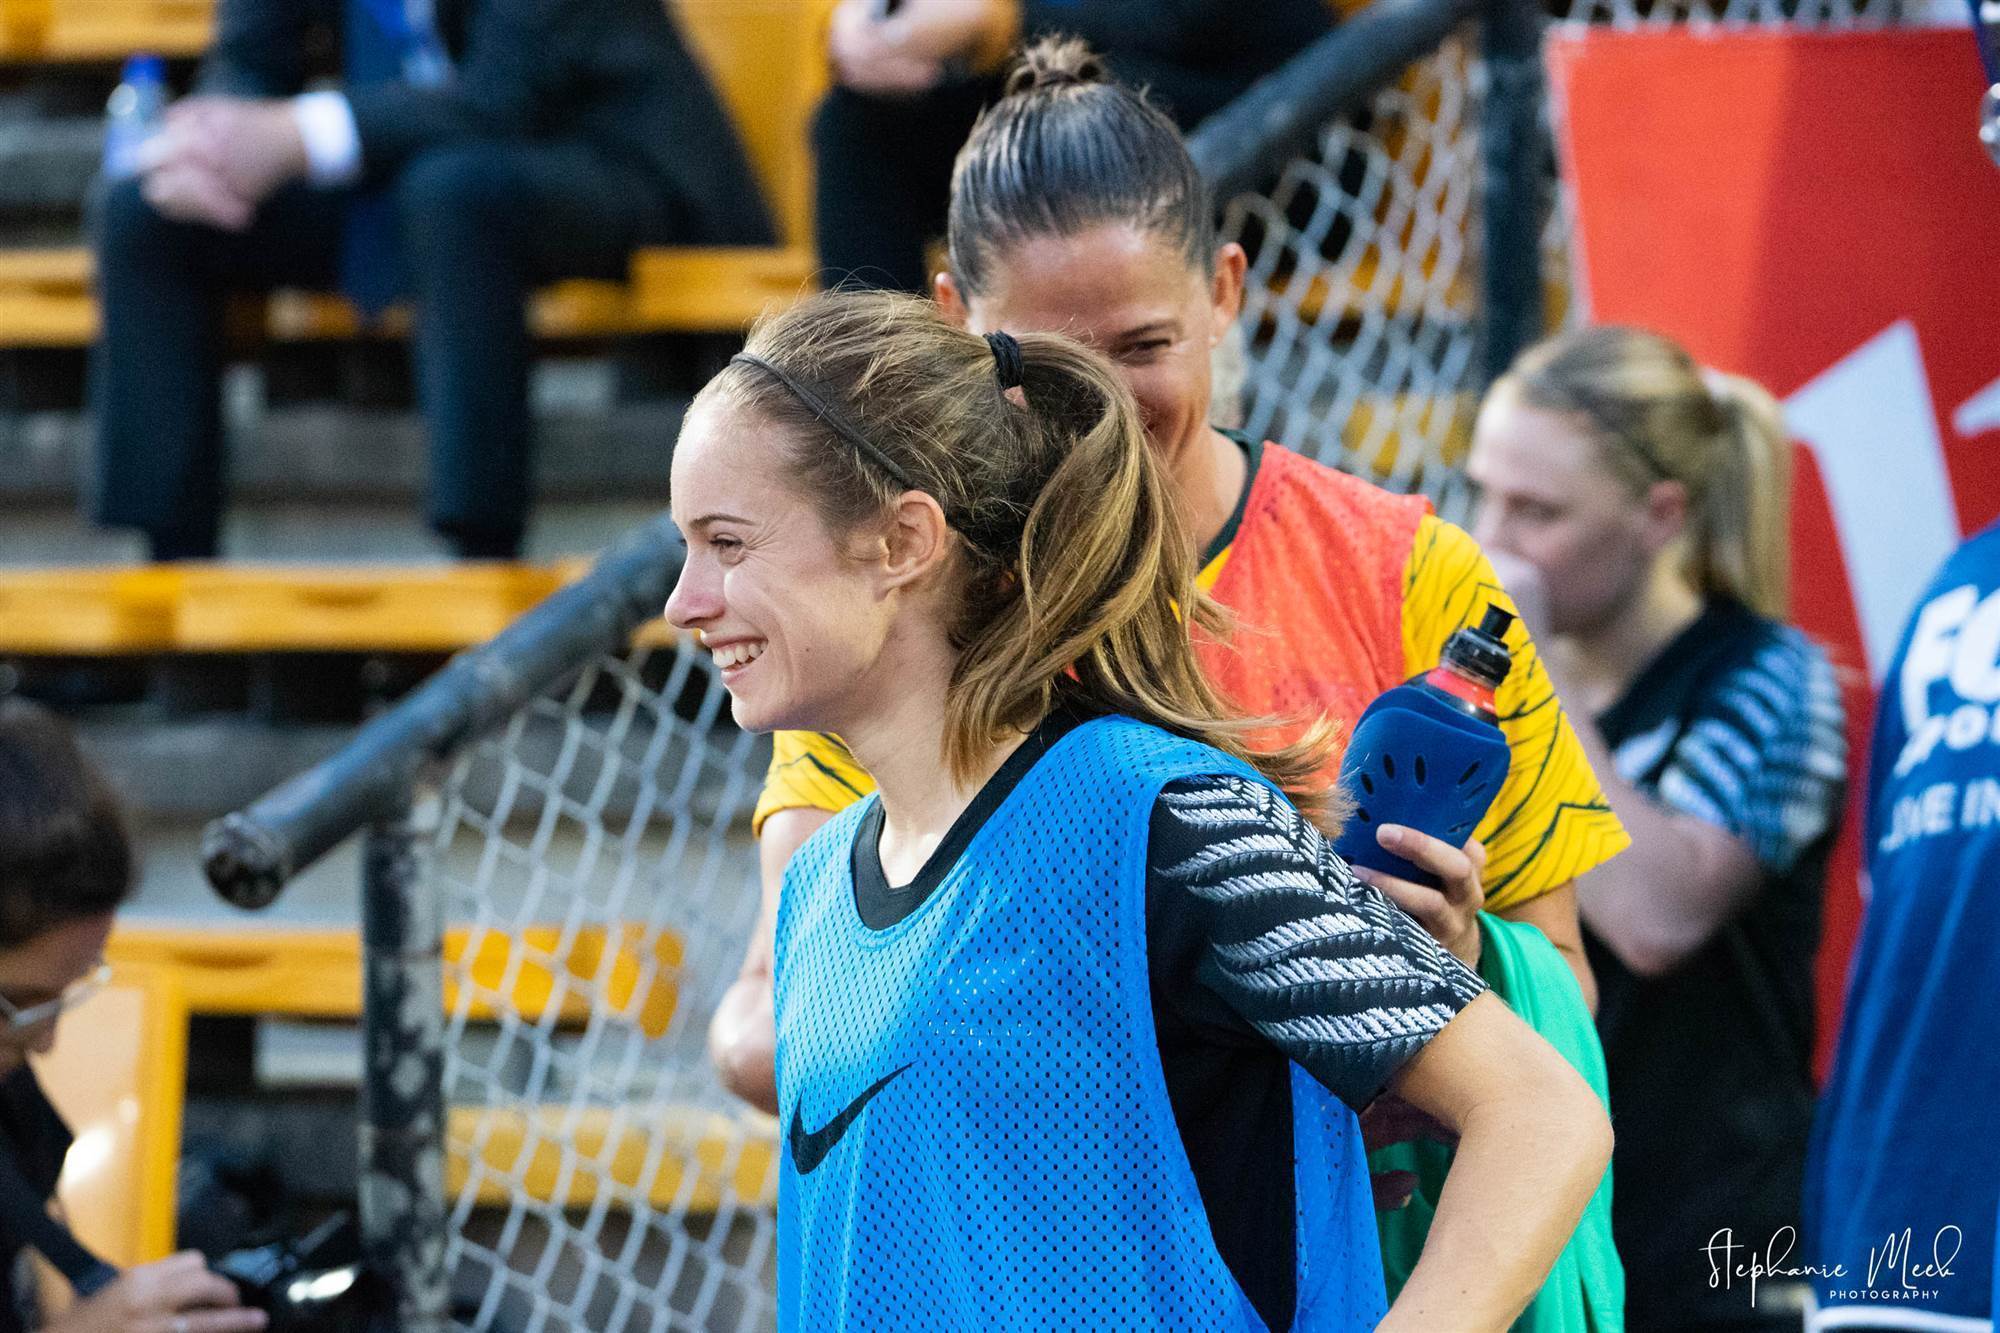 Pic Special: Australia v New Zealand - The Women's Game - Australia's ...